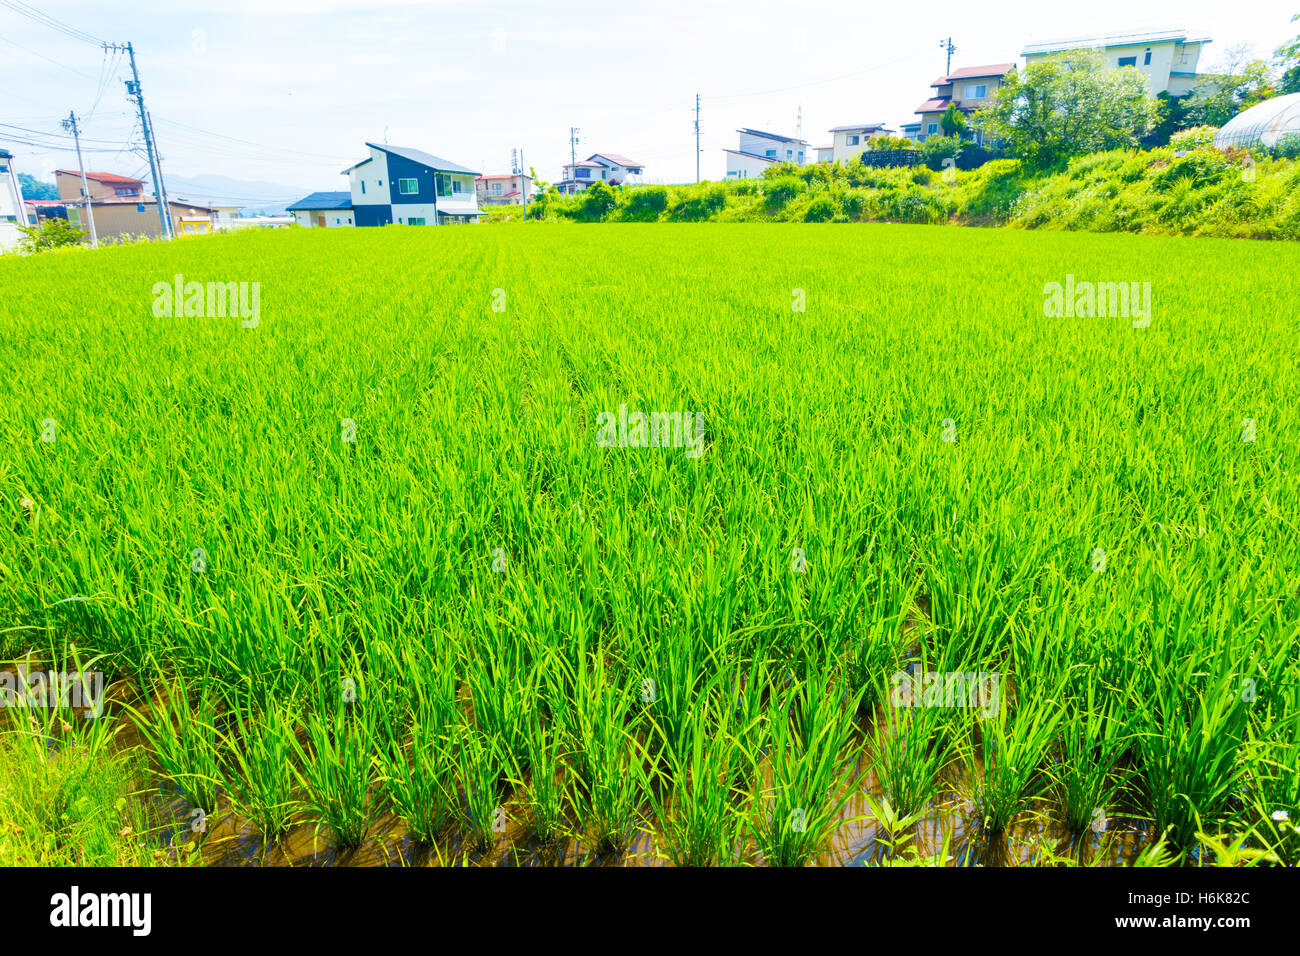 Wohnhäuser gesehen hinter grünen Stängel Gras auf kleinen Grundstück für Reisanbau im ländlichen Japan verwendet. Horizontale Stockfoto